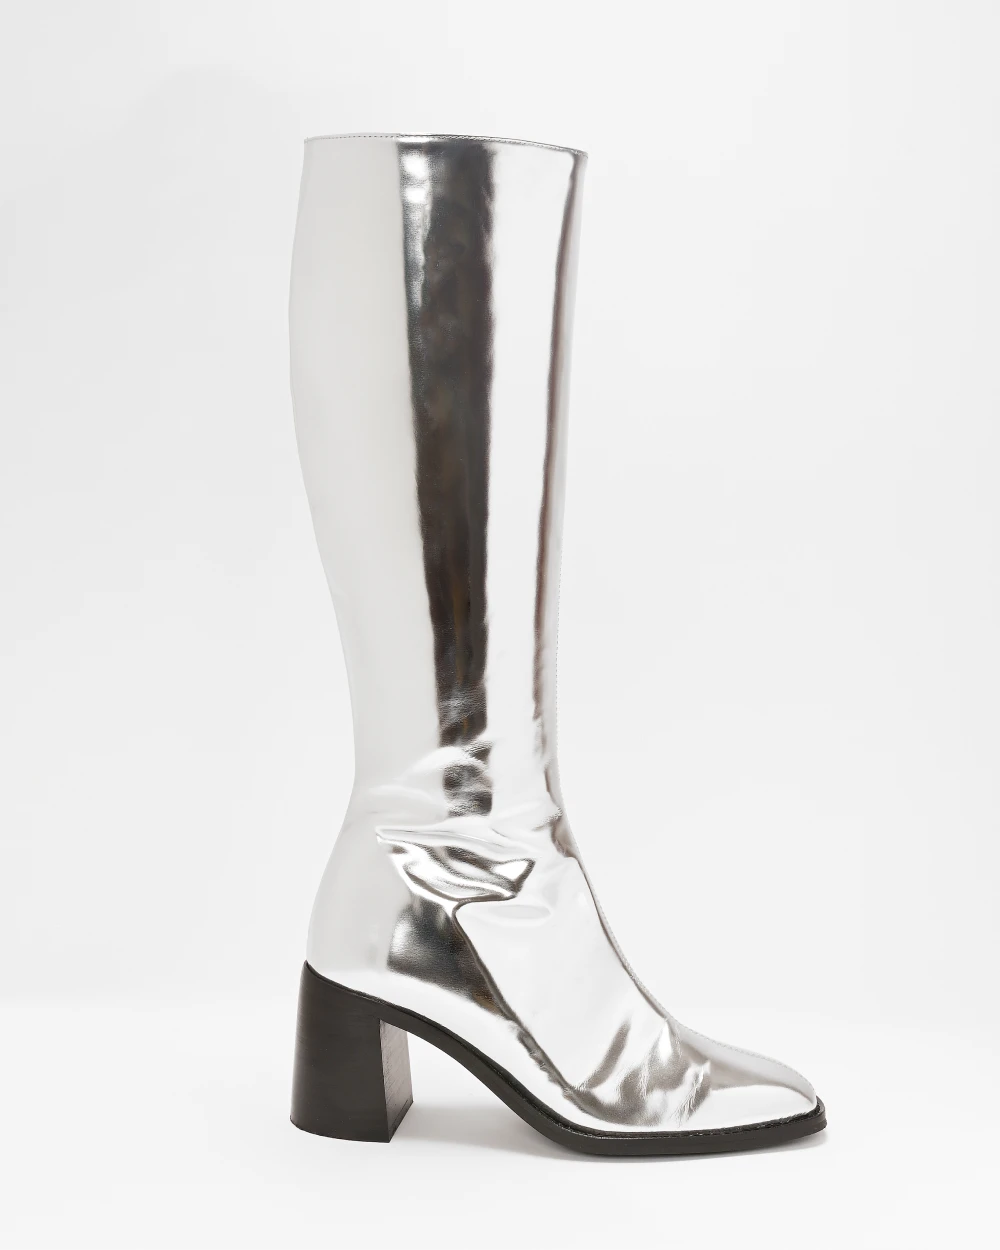 Les bottes CRISTOBAL à talon en cuir upcyclé argent métallisé, avec un talon large de 7cm pour des bottes élégantes, féminines et confortables